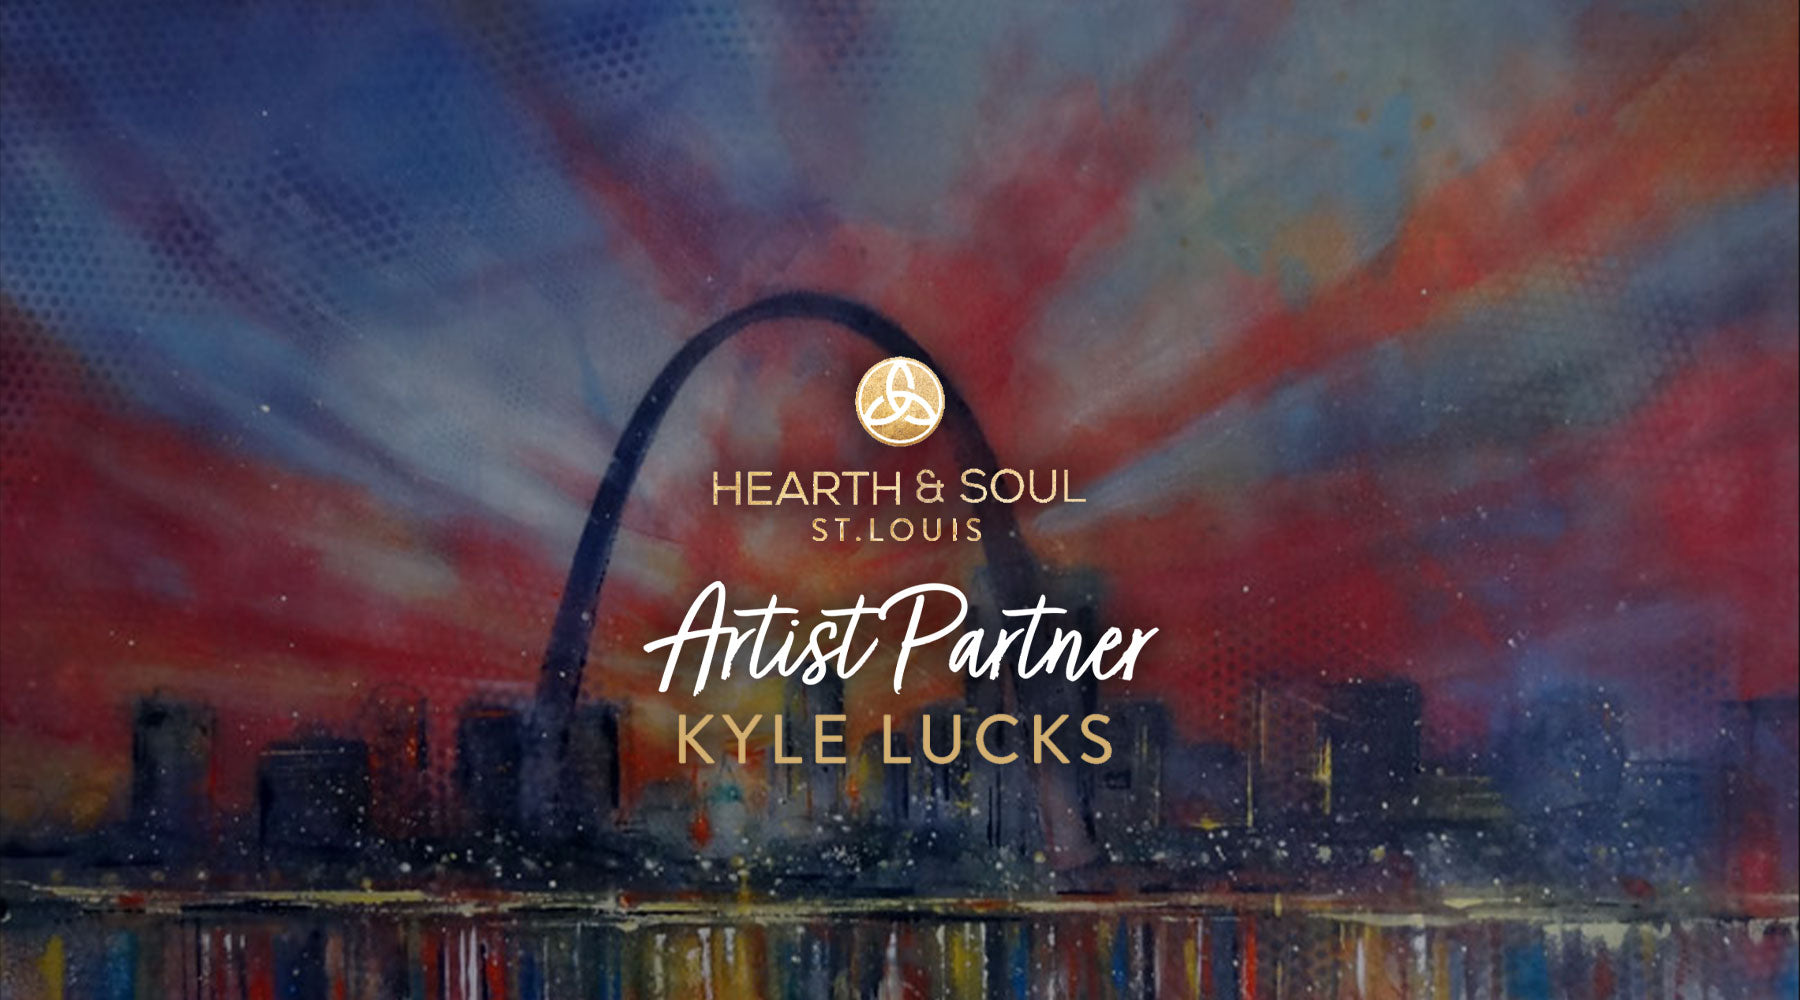 September in St. Louis: Hearth & Soul Artist Partner